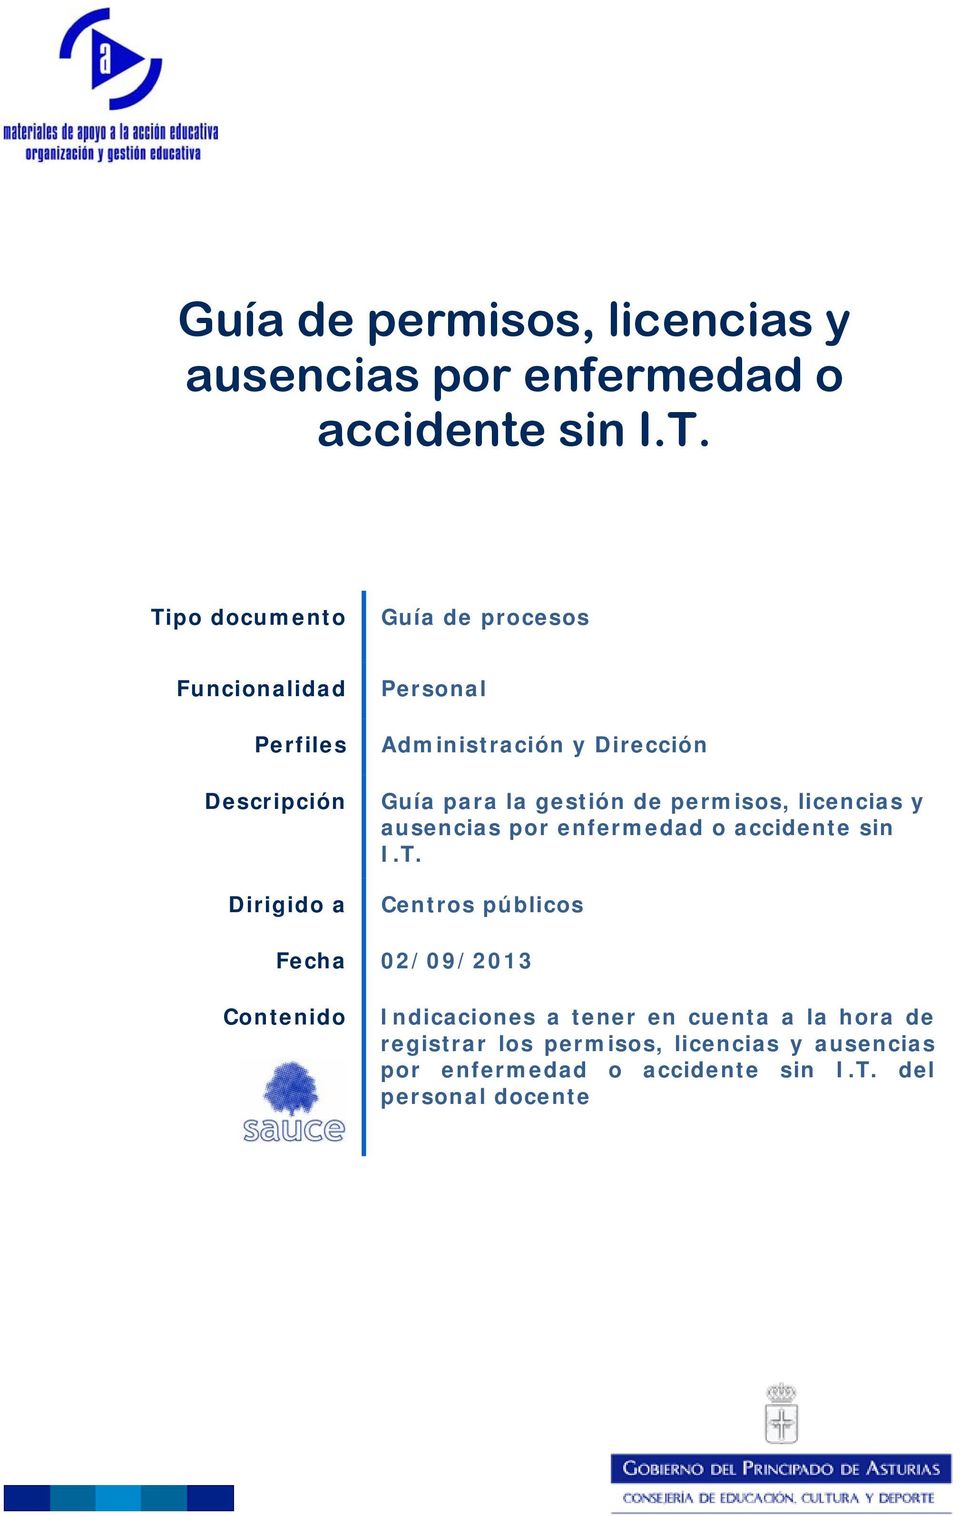 Guía para la gestión de permisos, licencias y ausencias por enfermedad o accidente sin I.T.